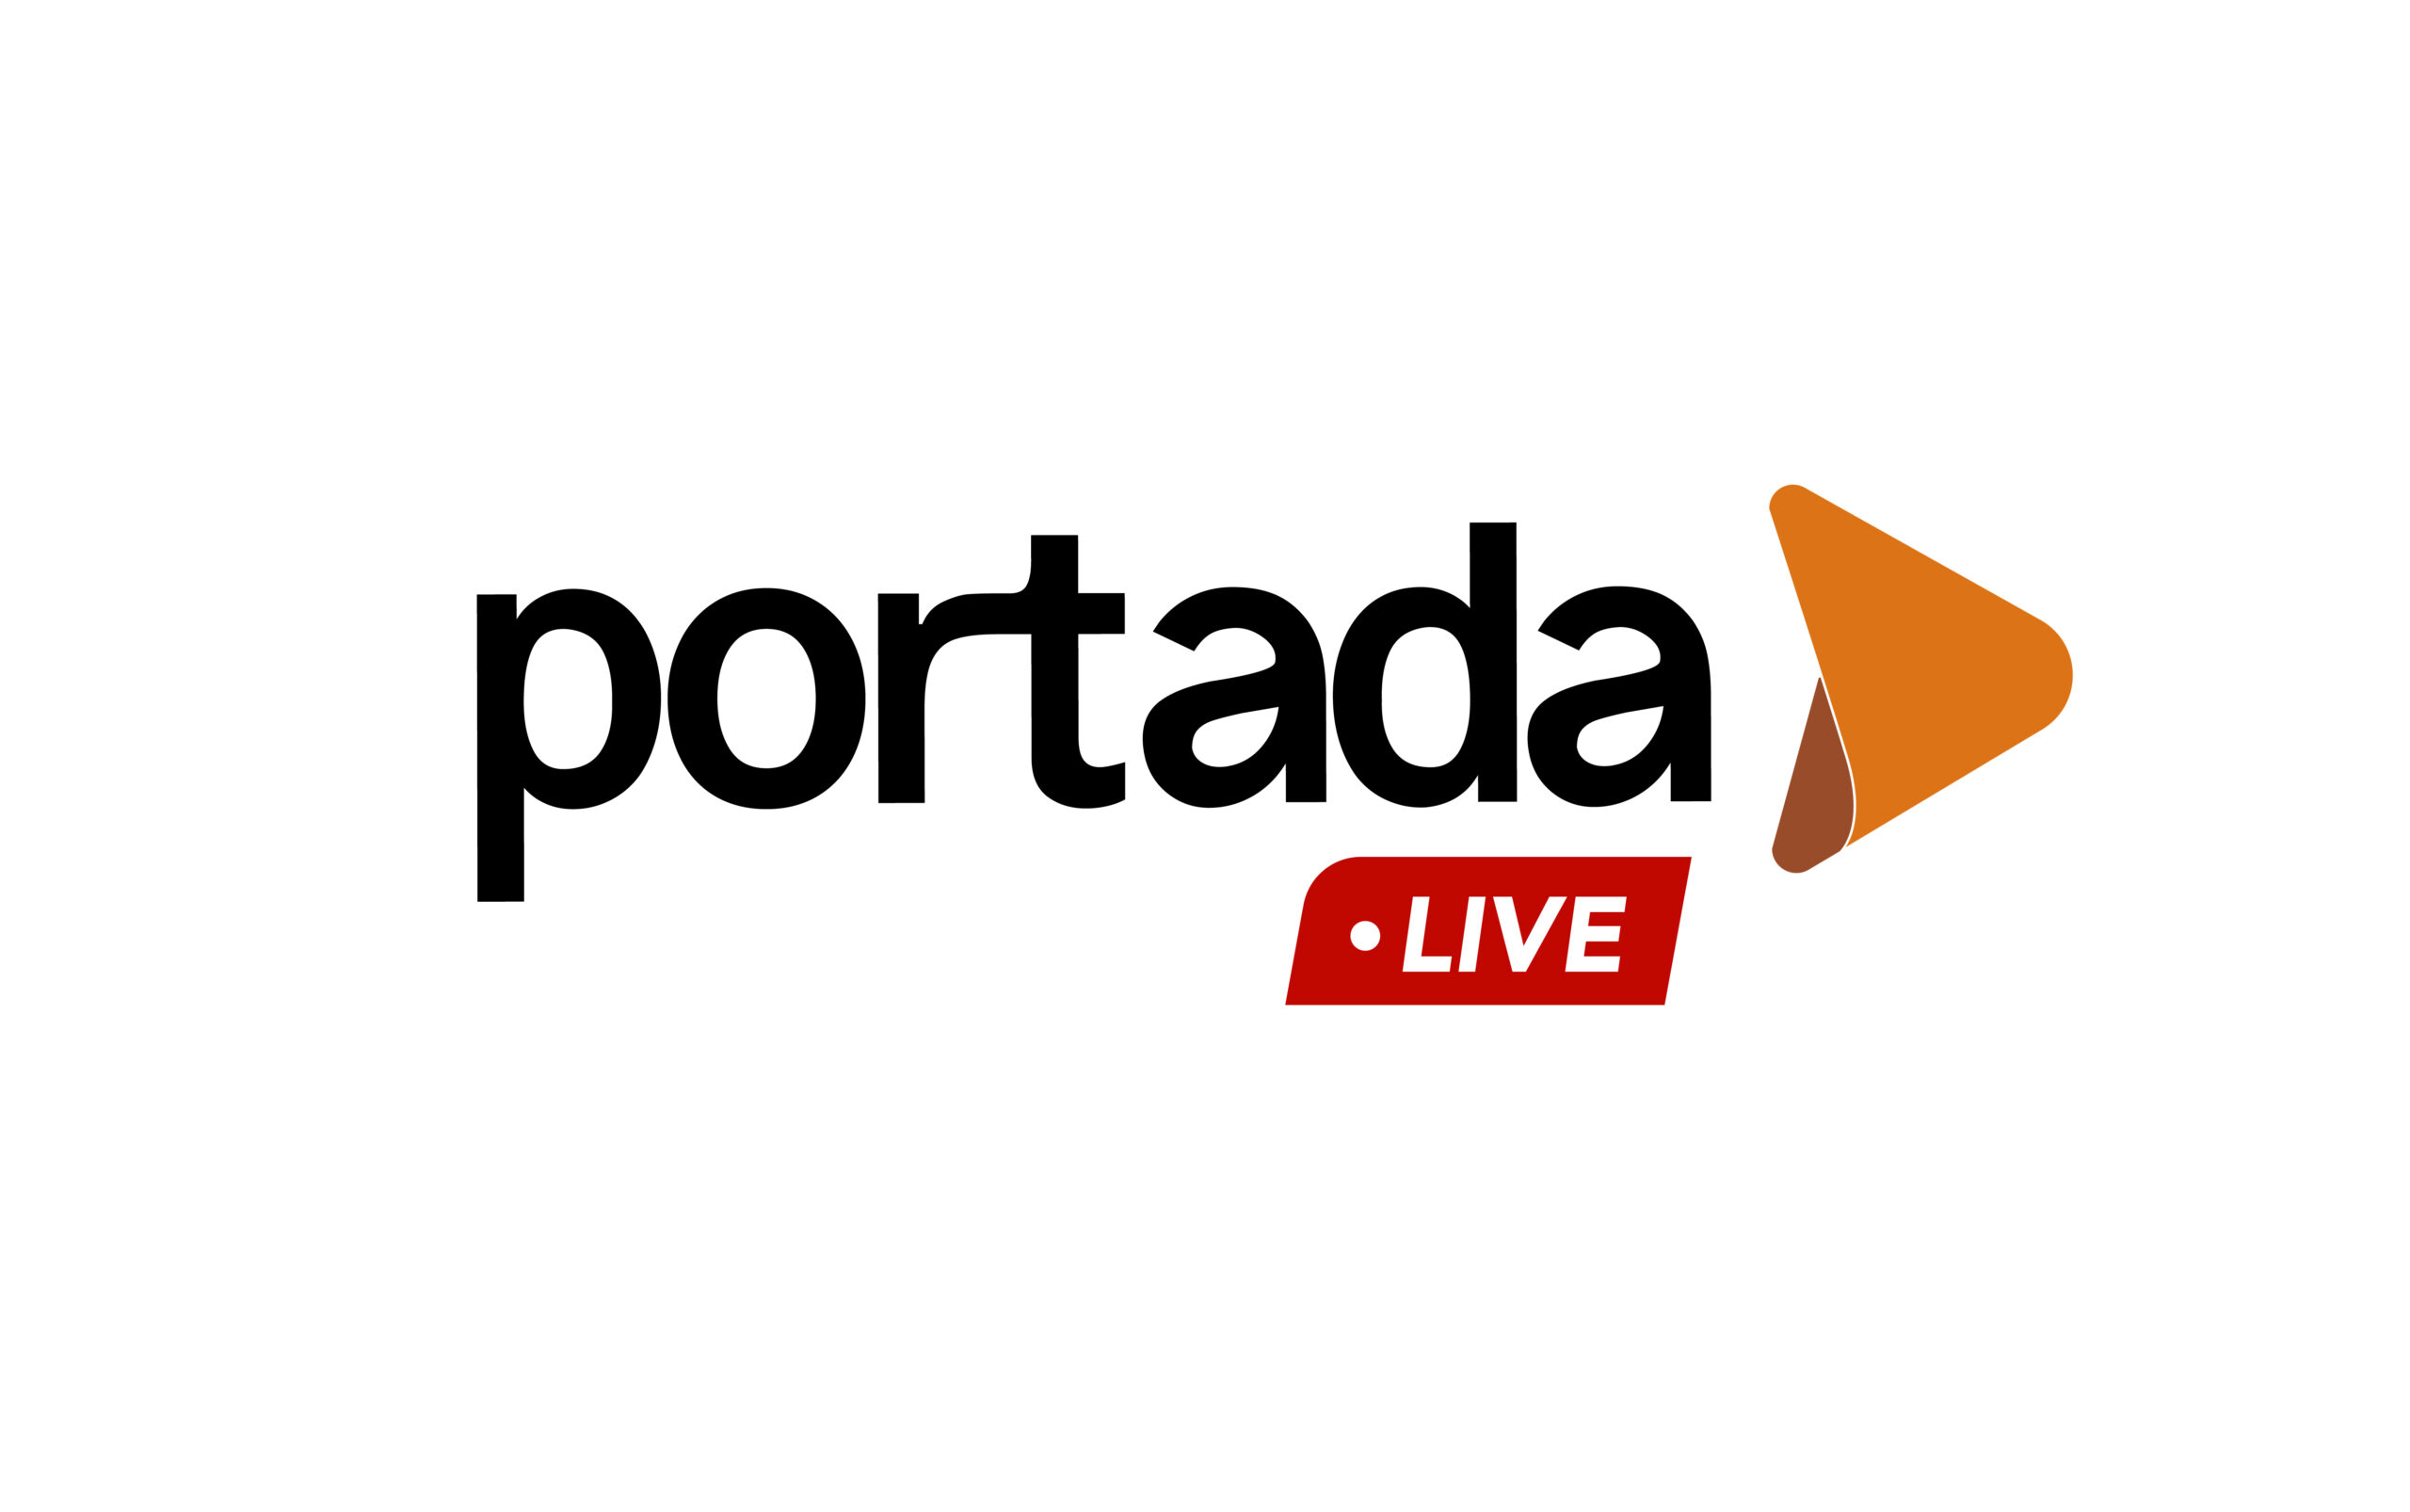 Portada Live